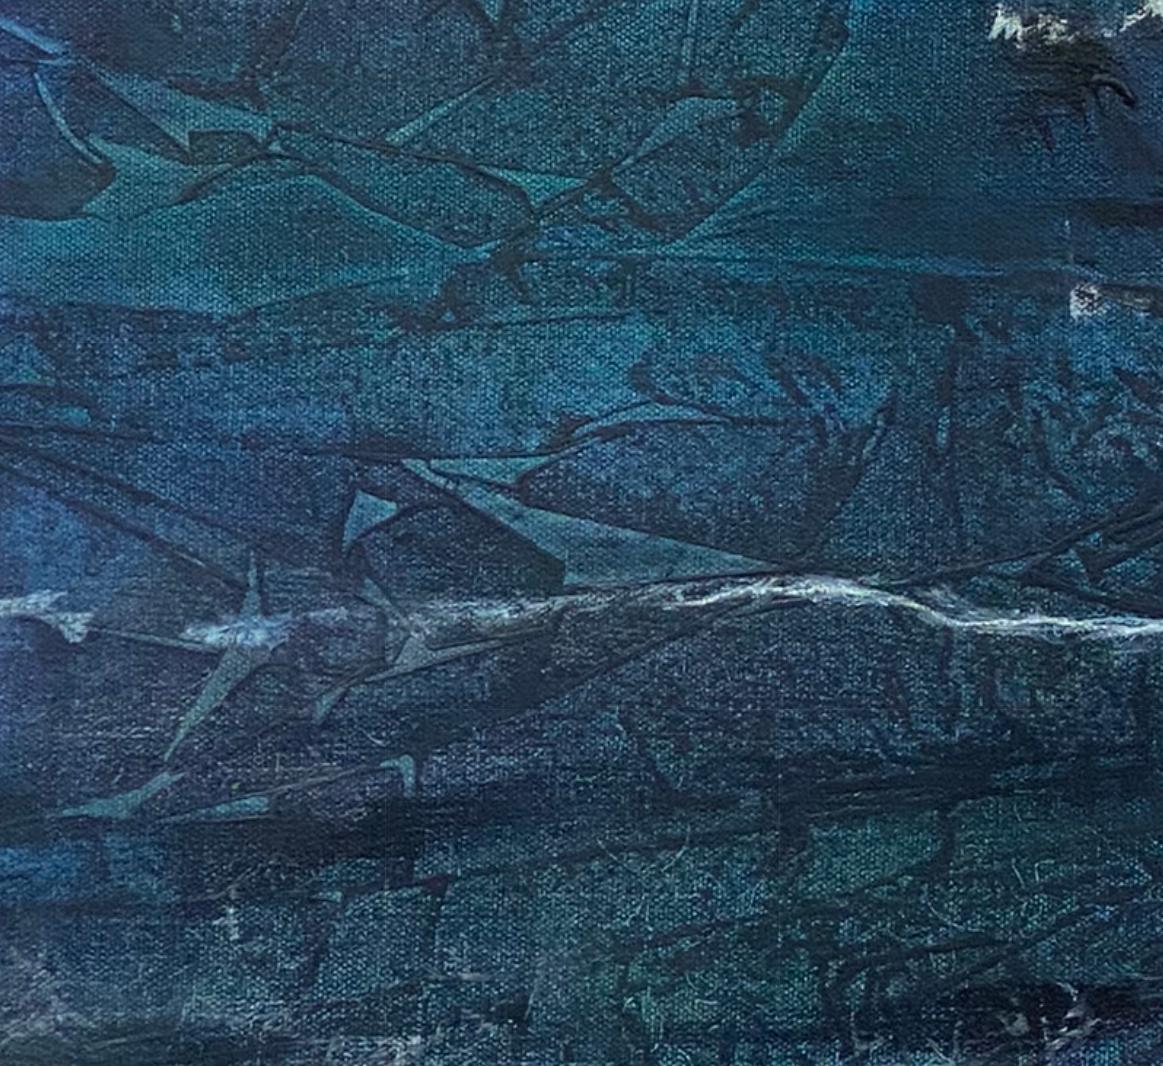 Peinture contemporaine originale de paysage aquatique bleu nuit et orange 24